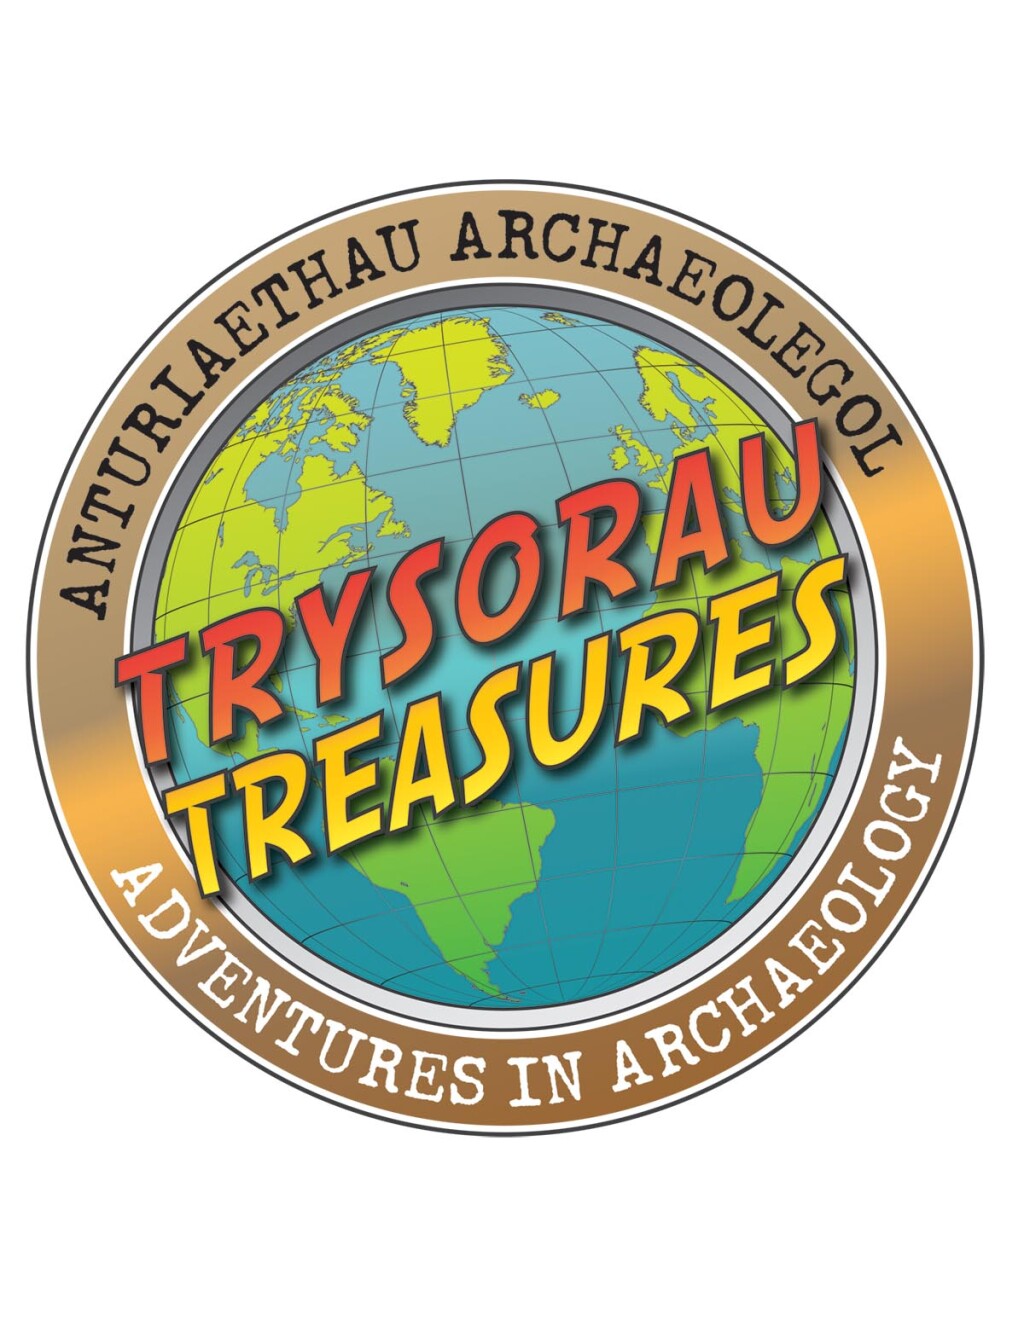 Logo for Treasures exhibition